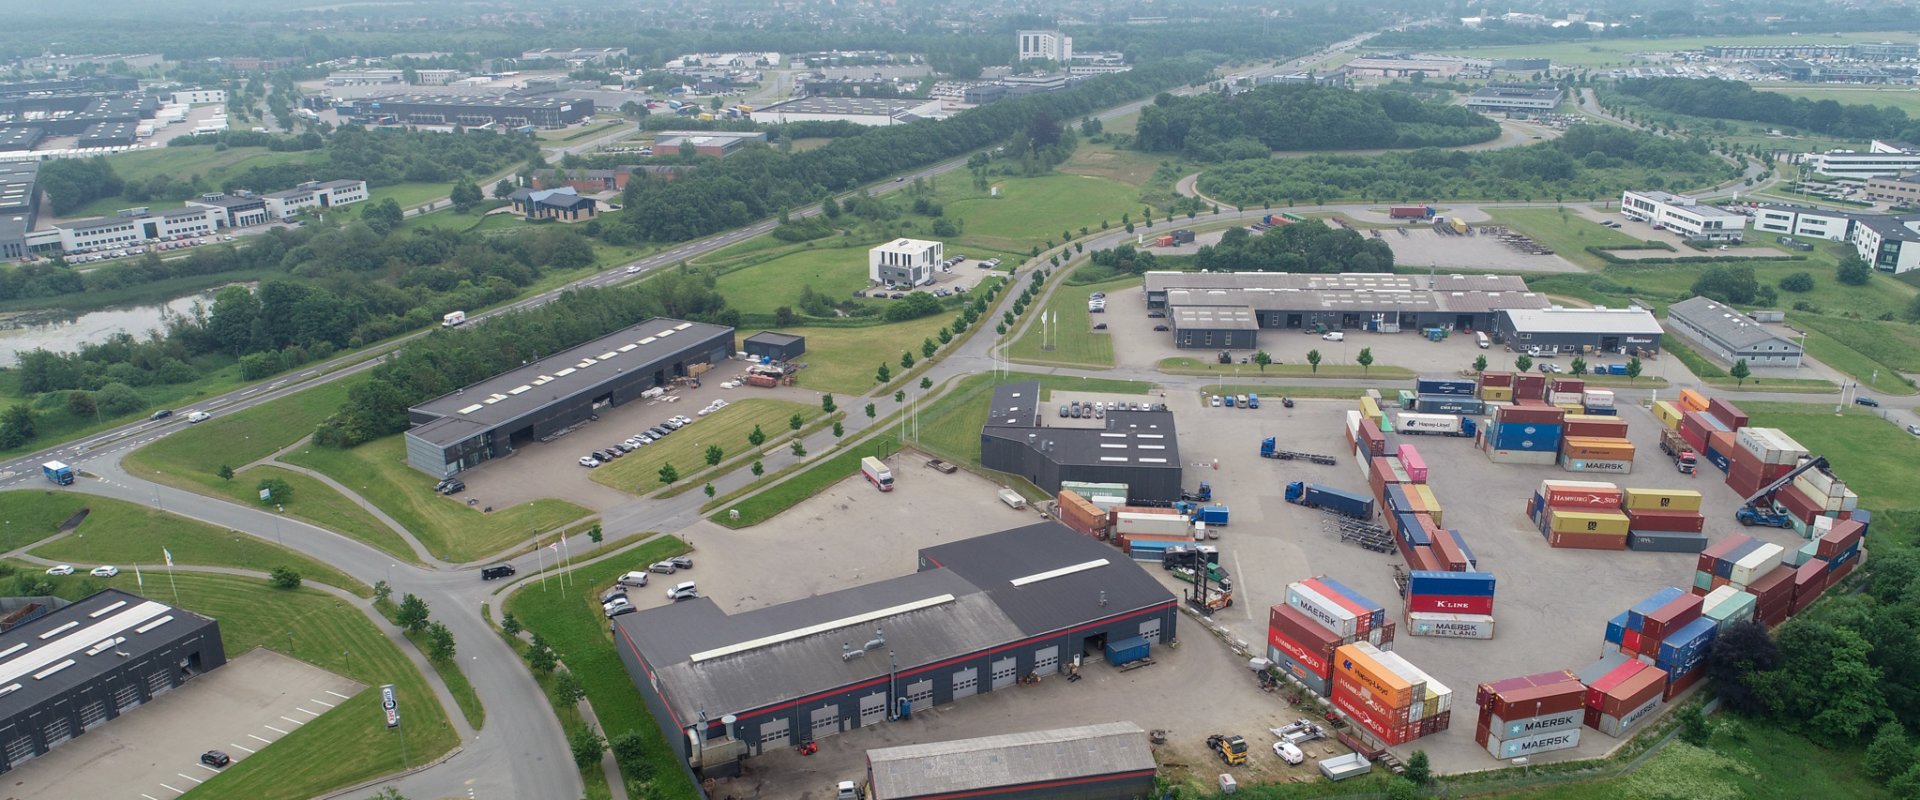 Dronefoto over erhvervsområde i Kolding Nord med virksomheder og en plads med farvestrålende containere i gule, blå, røde og orange farver